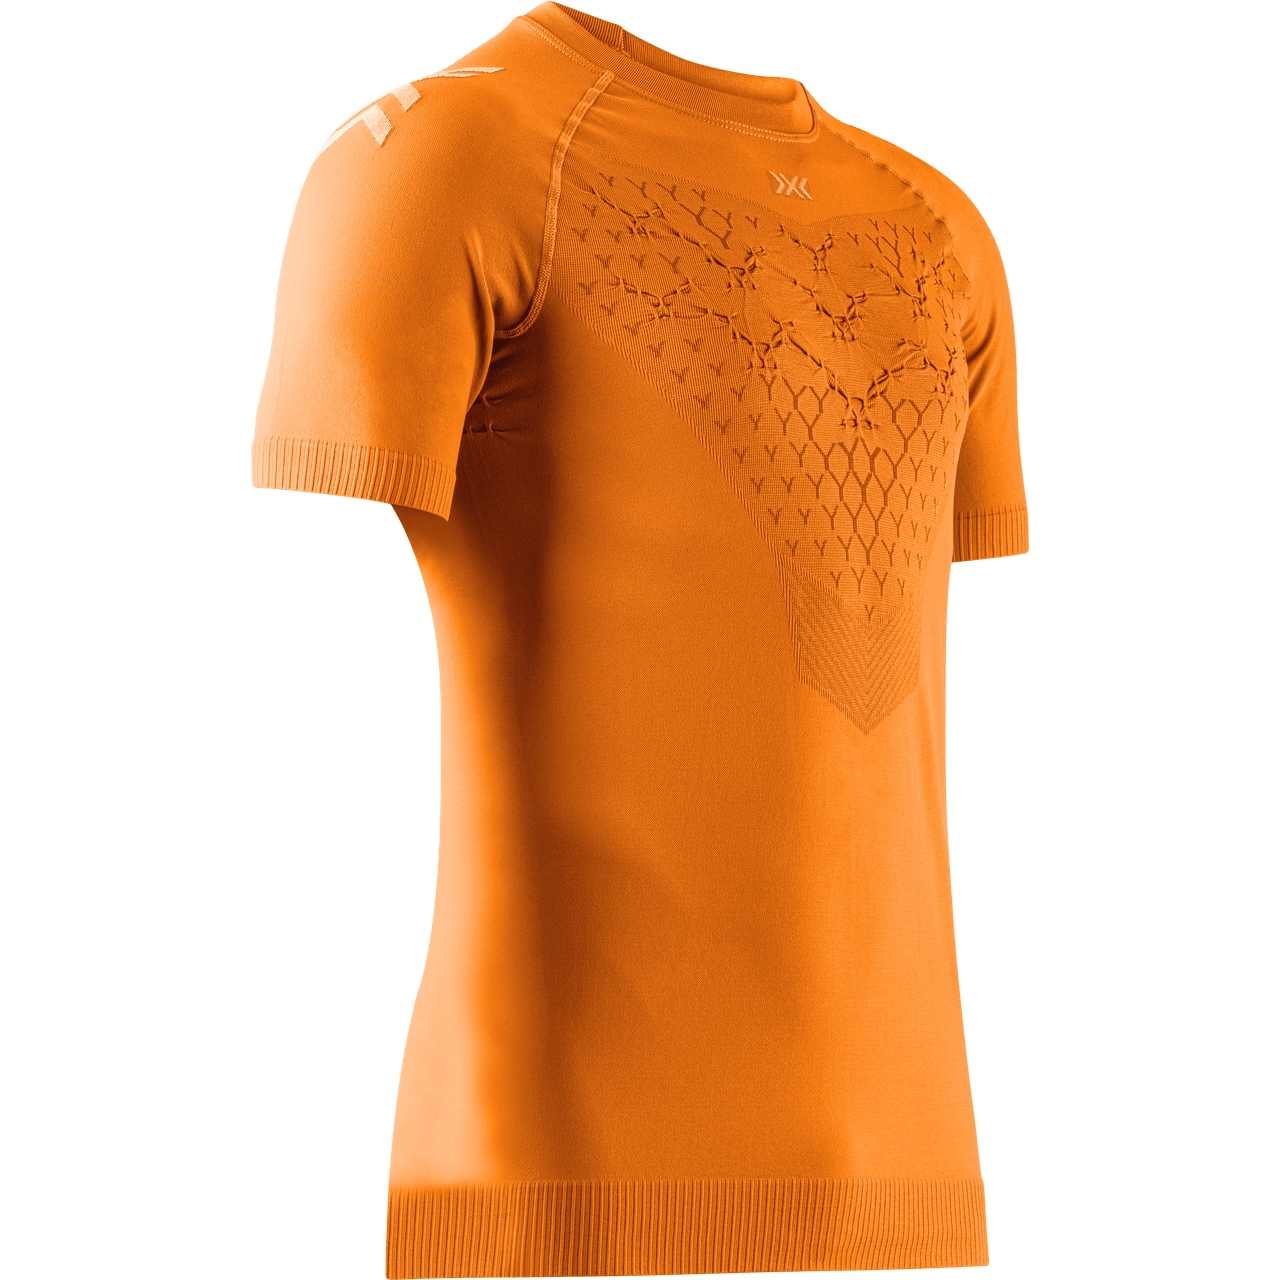 Produktbild von X-Bionic Twyce Laufshirt Herren - blazing orange/arctic white